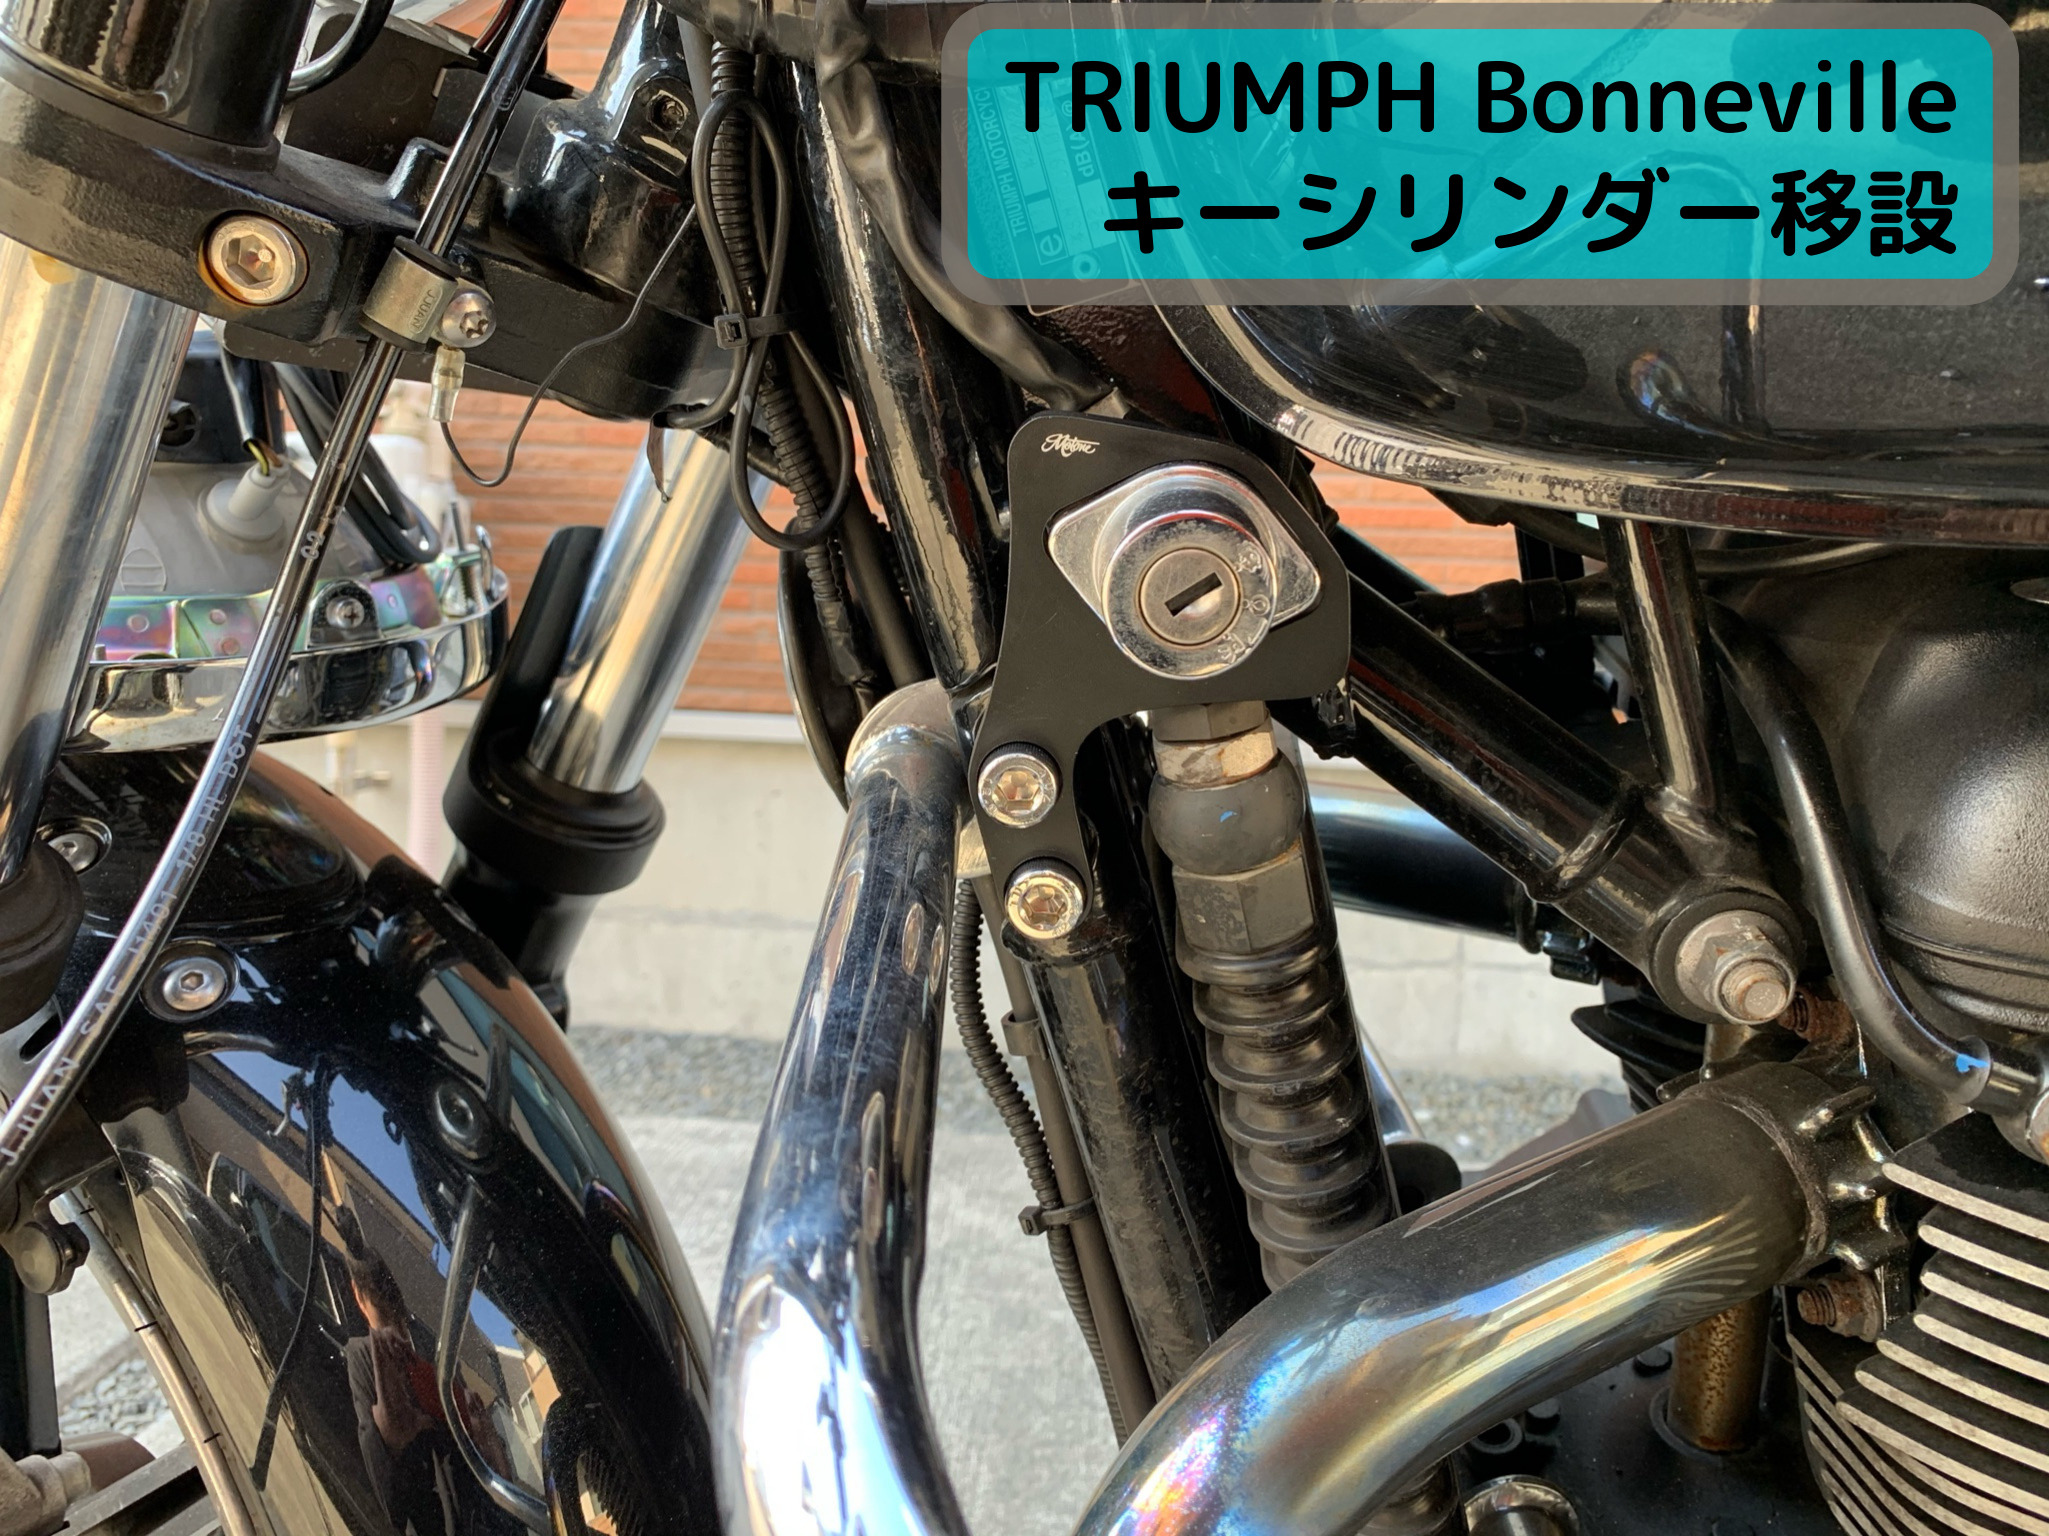 バイクのキーシリンダーを分解して移設 Motone製ステーをボンネビルに取り付け